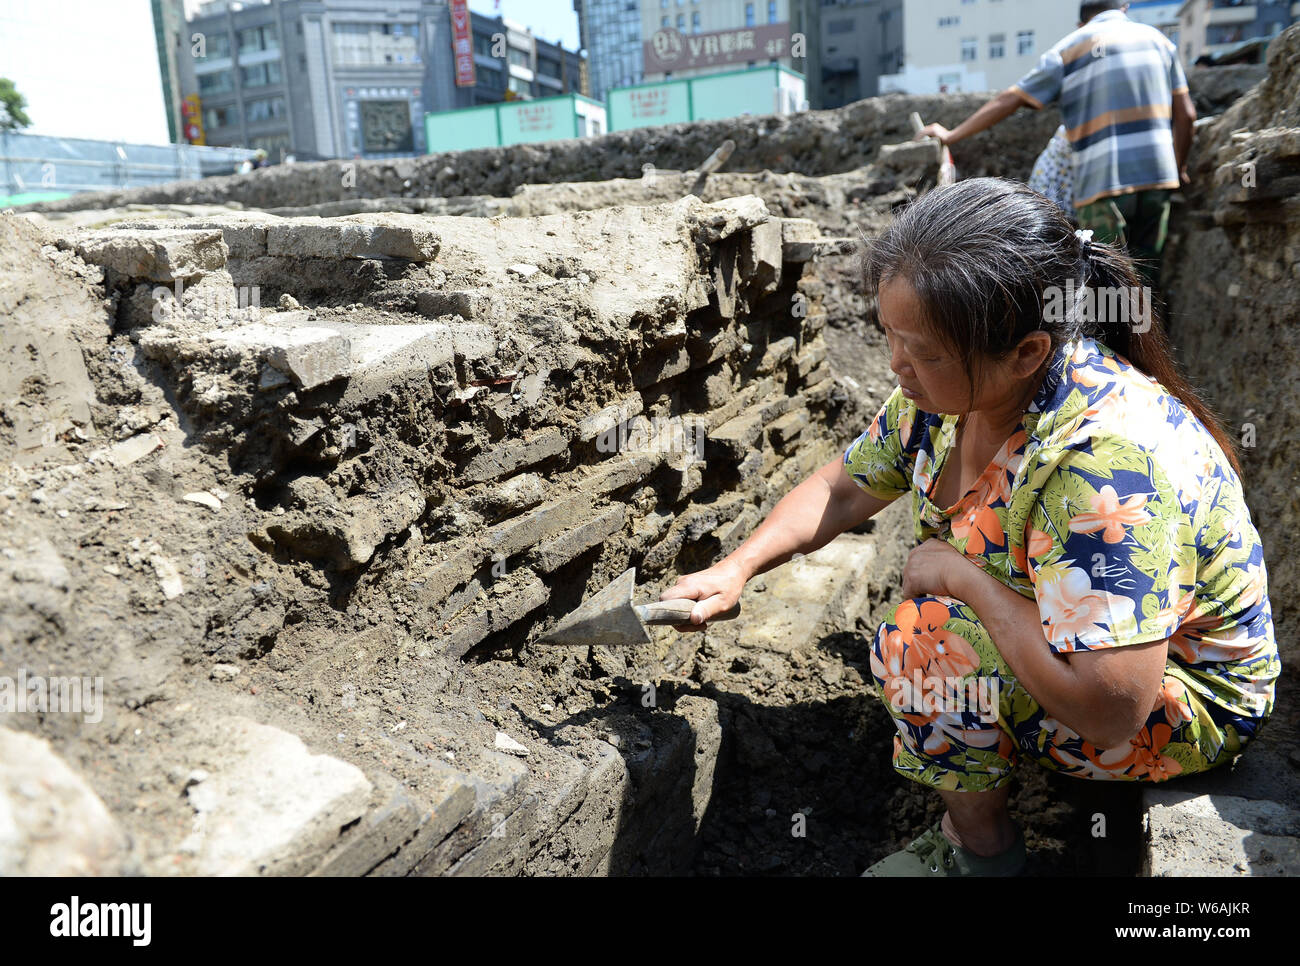 Les travailleurs chinois enquêter sur le site de fouilles de l'ancienne ville des ruines de la fin de la dynastie Tang (618-907) de la dynastie des Song du Sud (960-1279) en C Banque D'Images